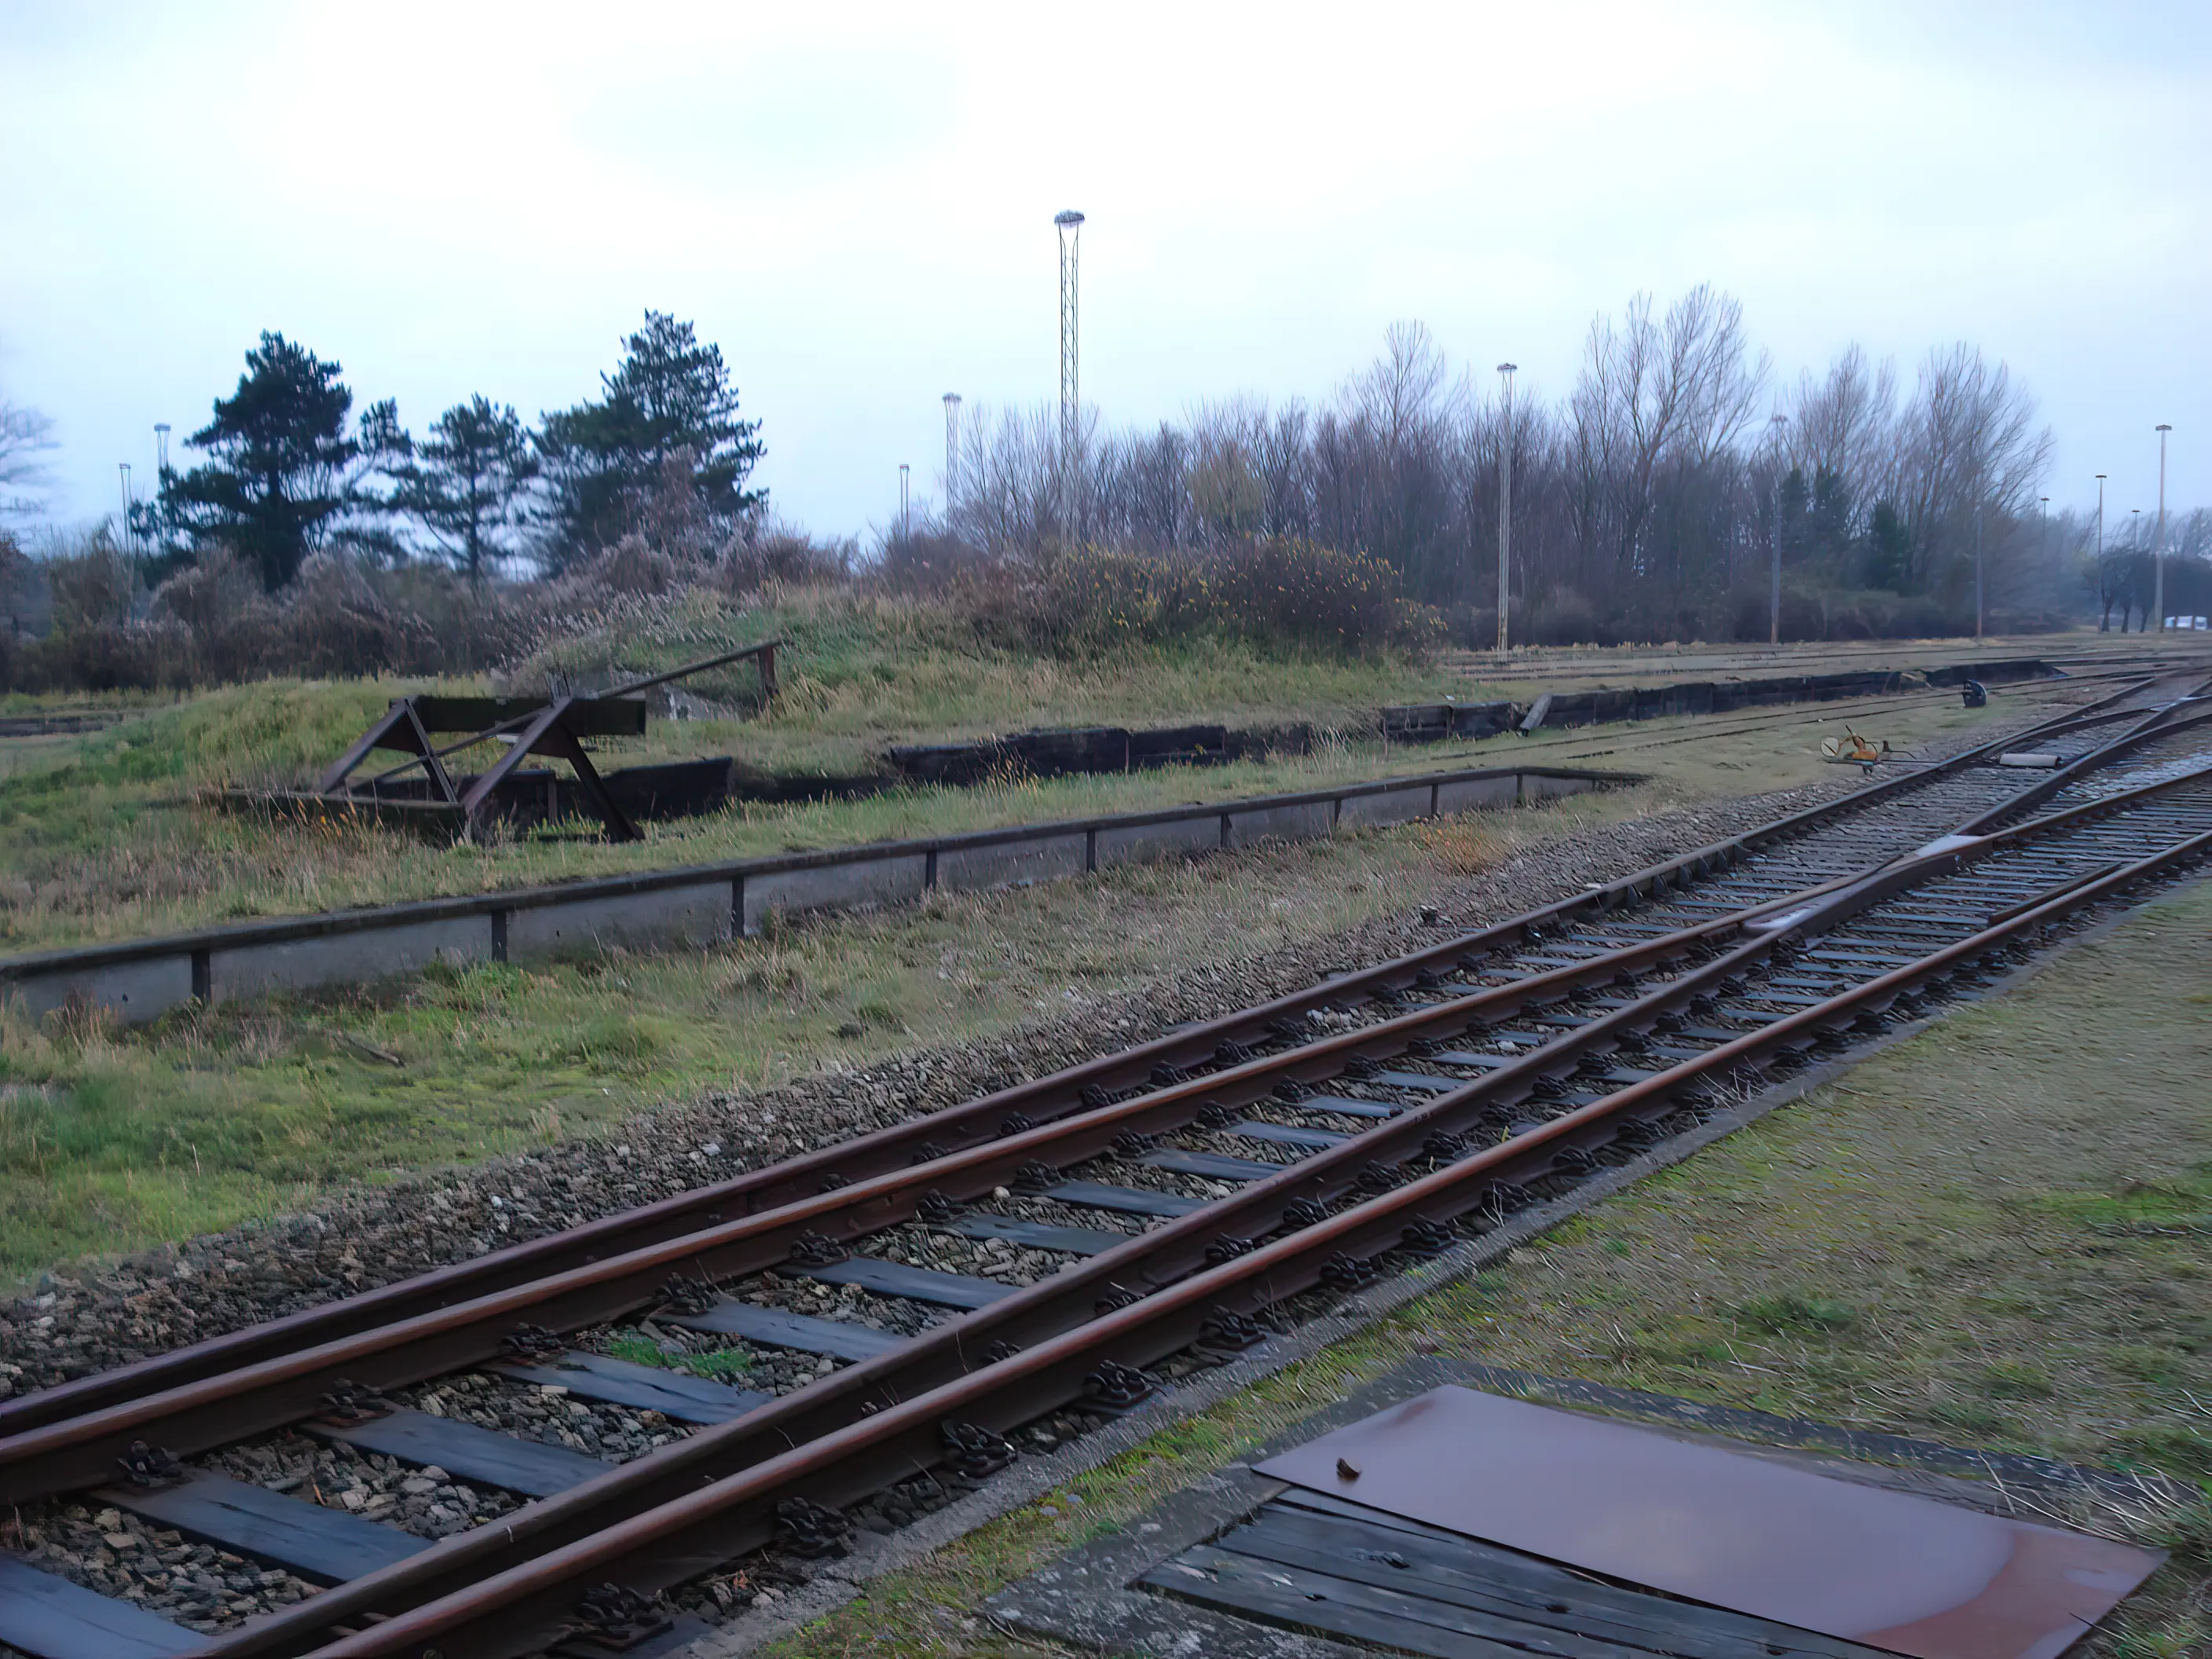 Remise området ved Gedser Station.